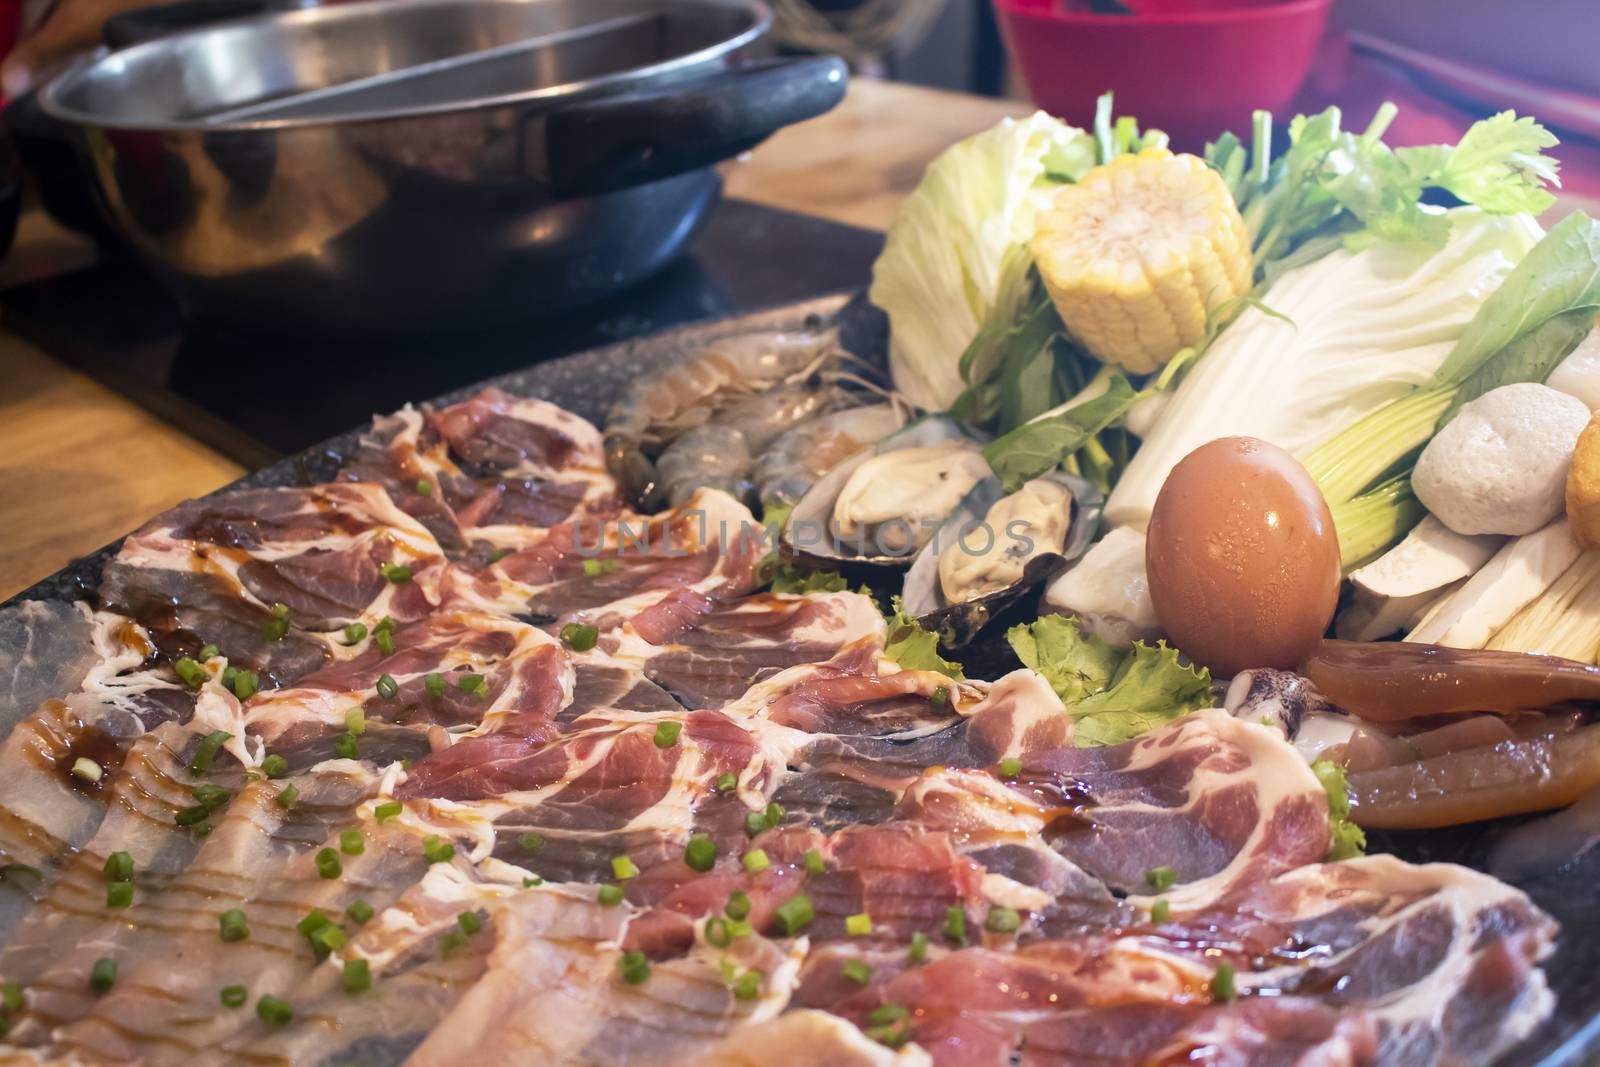 Shabu-shabu platter on table at Japanese restaurant with people eating